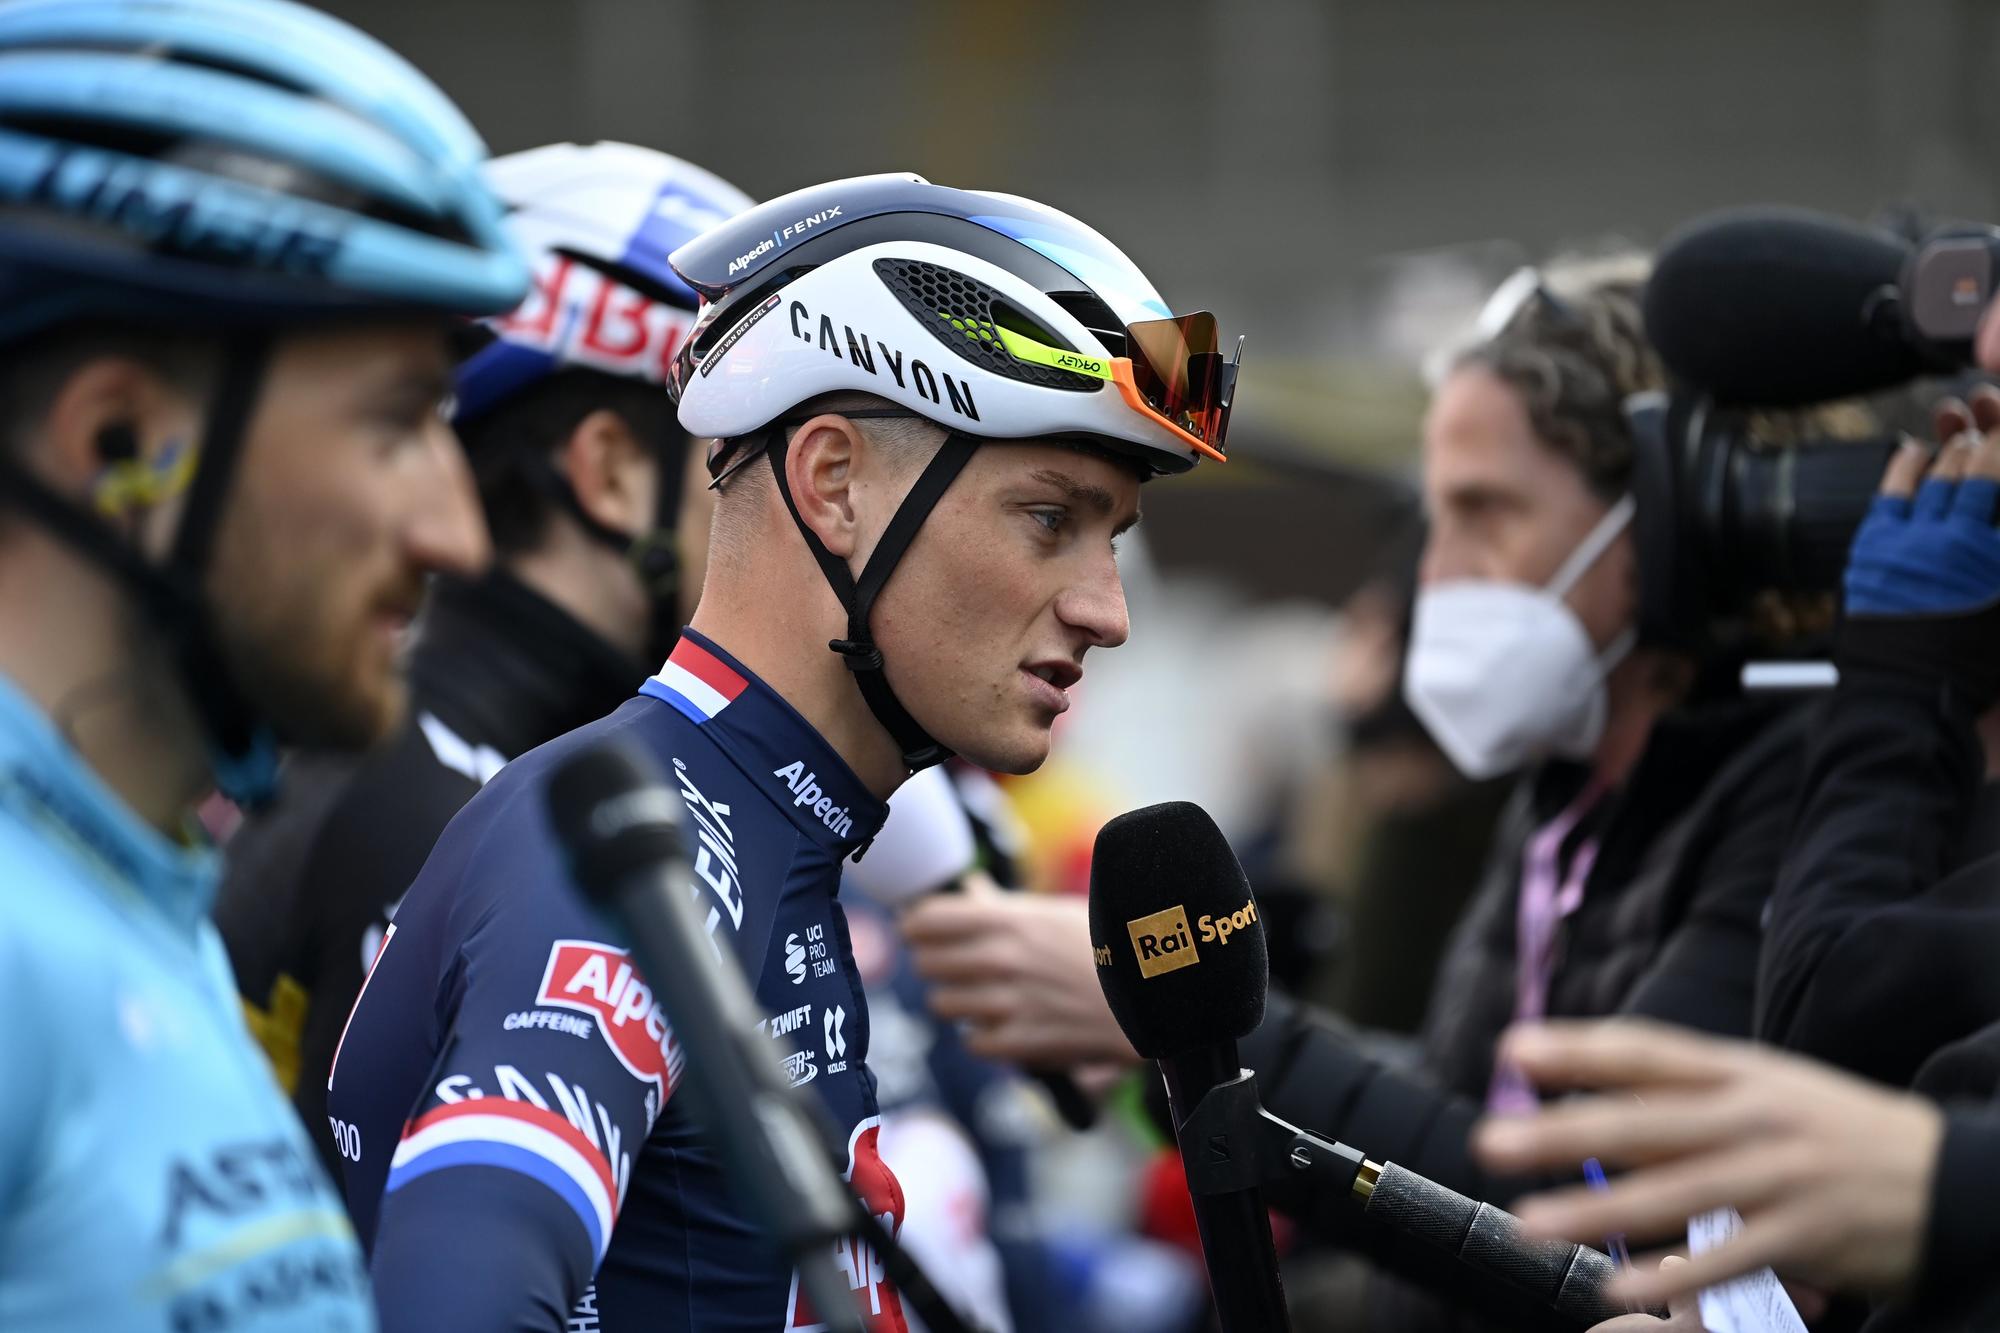 Milan-San Remo start line quotes Pogacar, Van Aert, Van der Poel, Roglic Cyclingnews